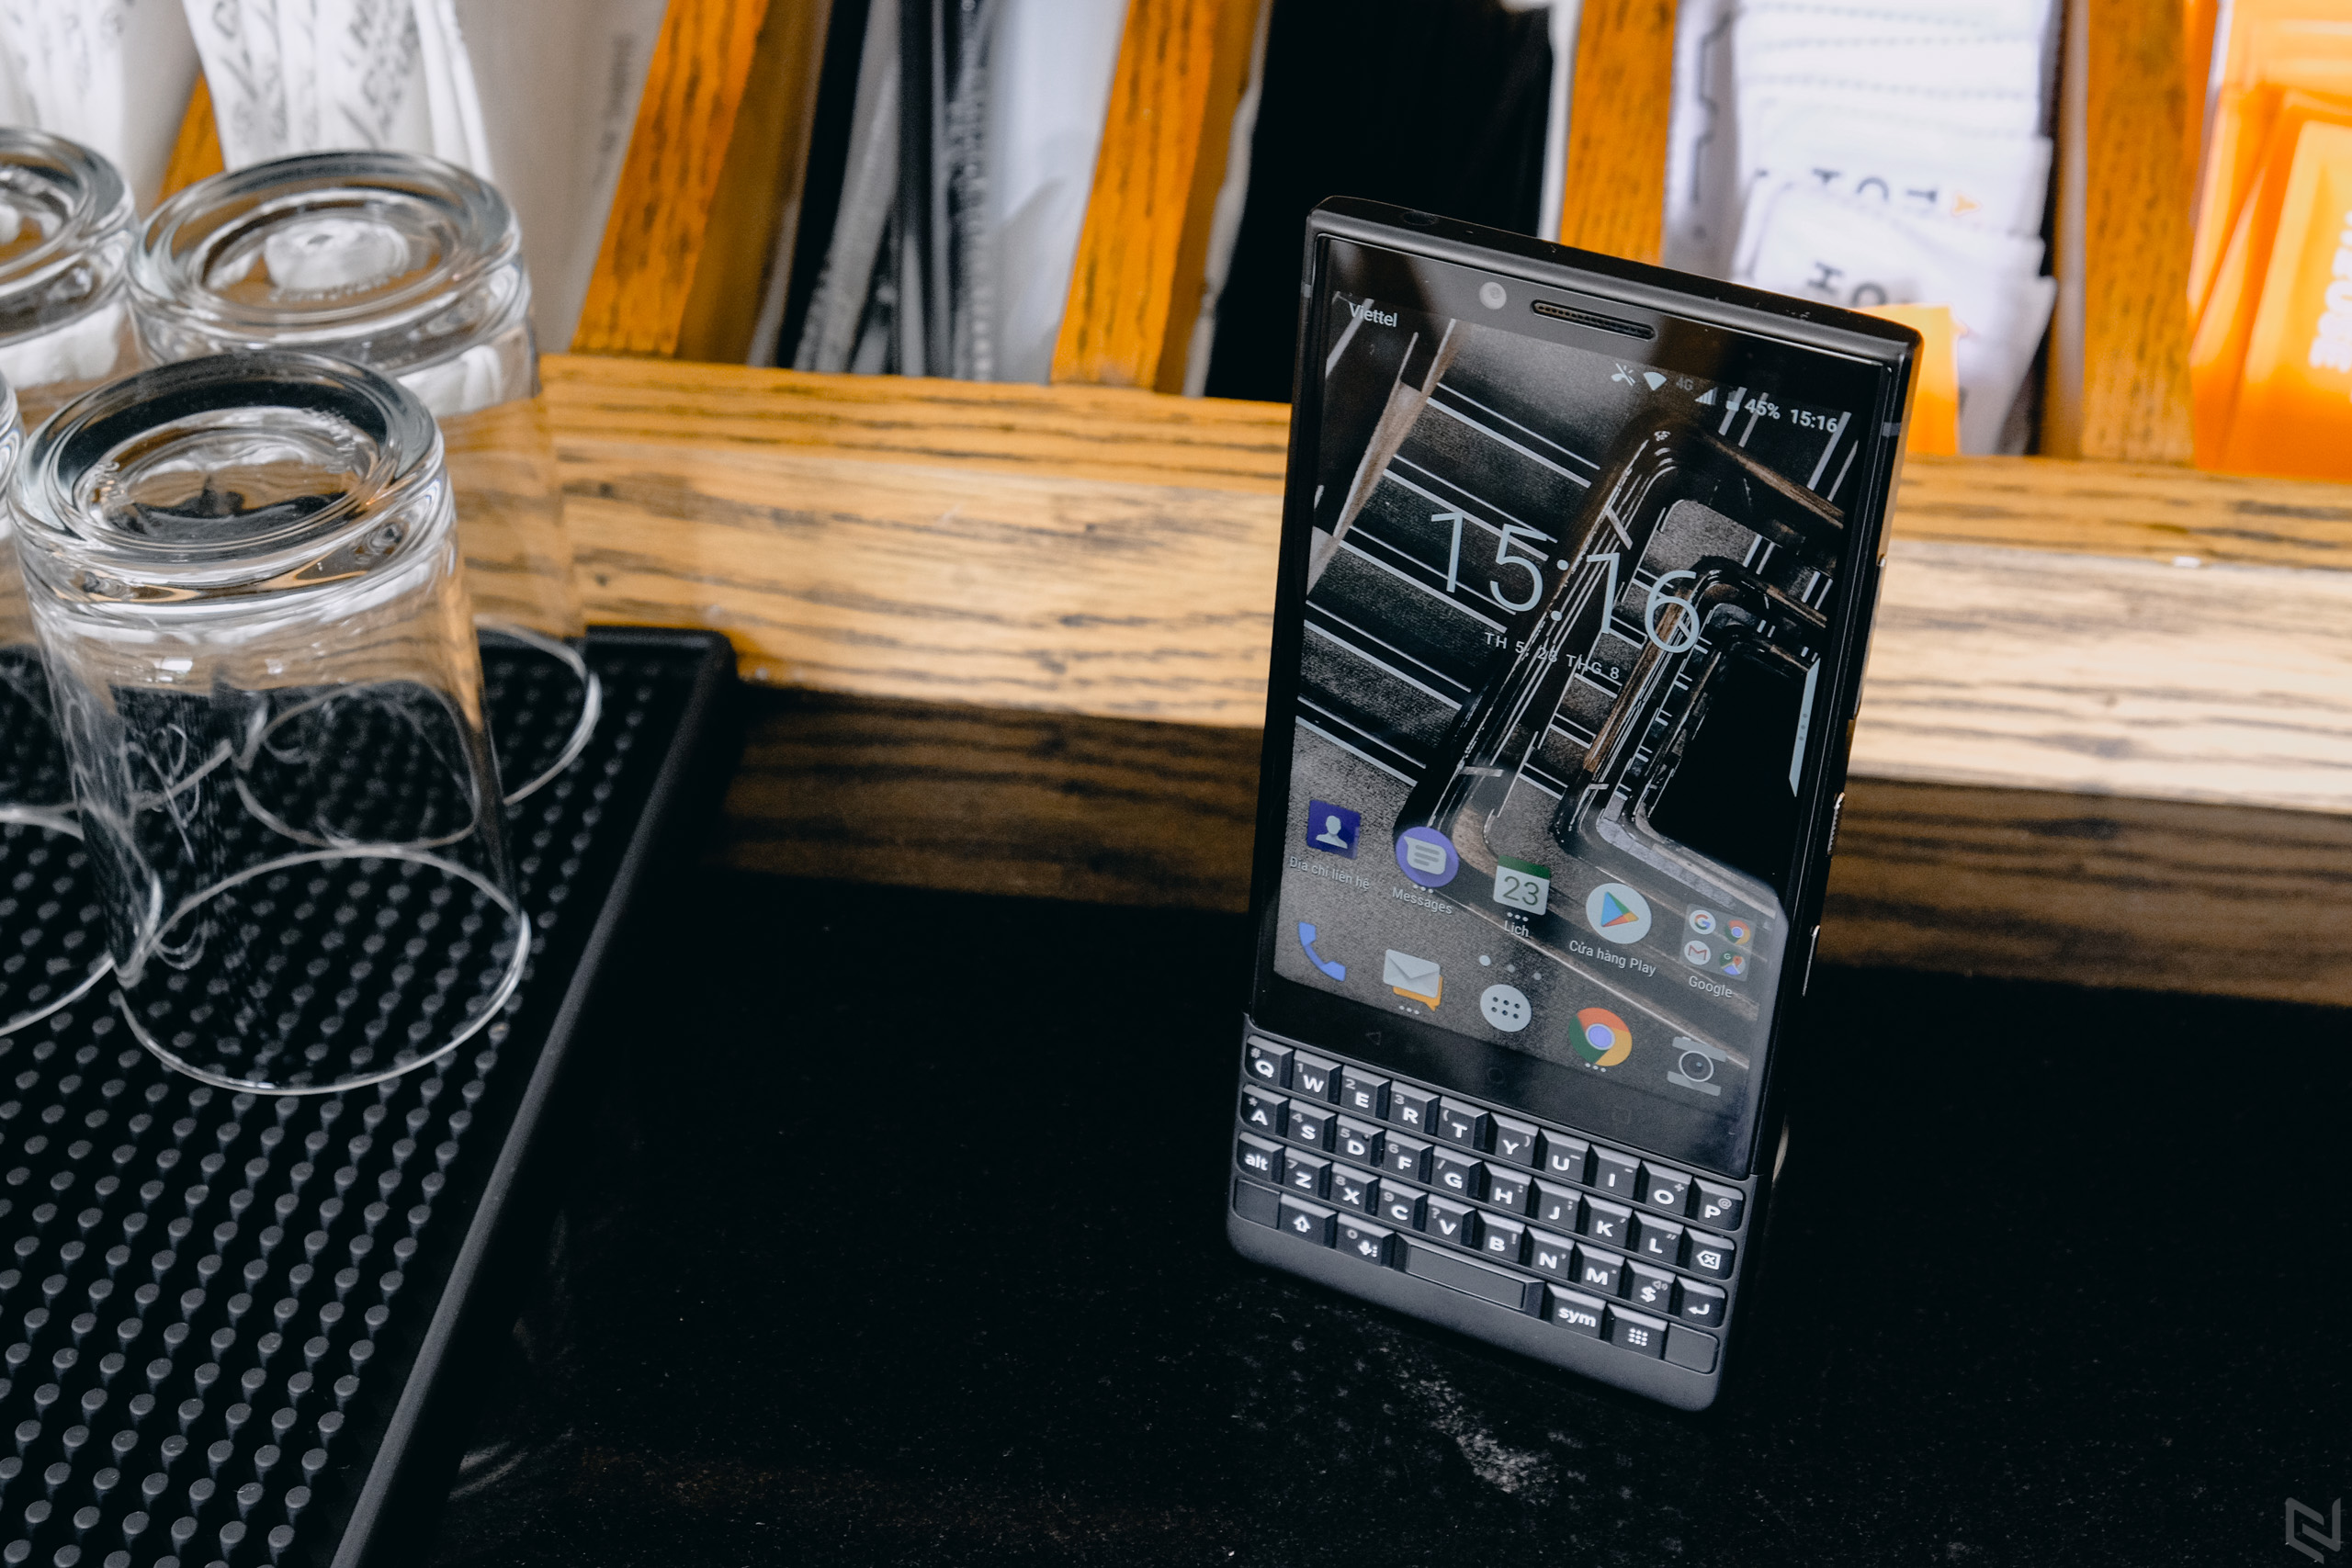 BlackBerry chính thức khai tử toàn bộ smartphone chạy Android của mình và sẽ ngừng bán vào 8/2020